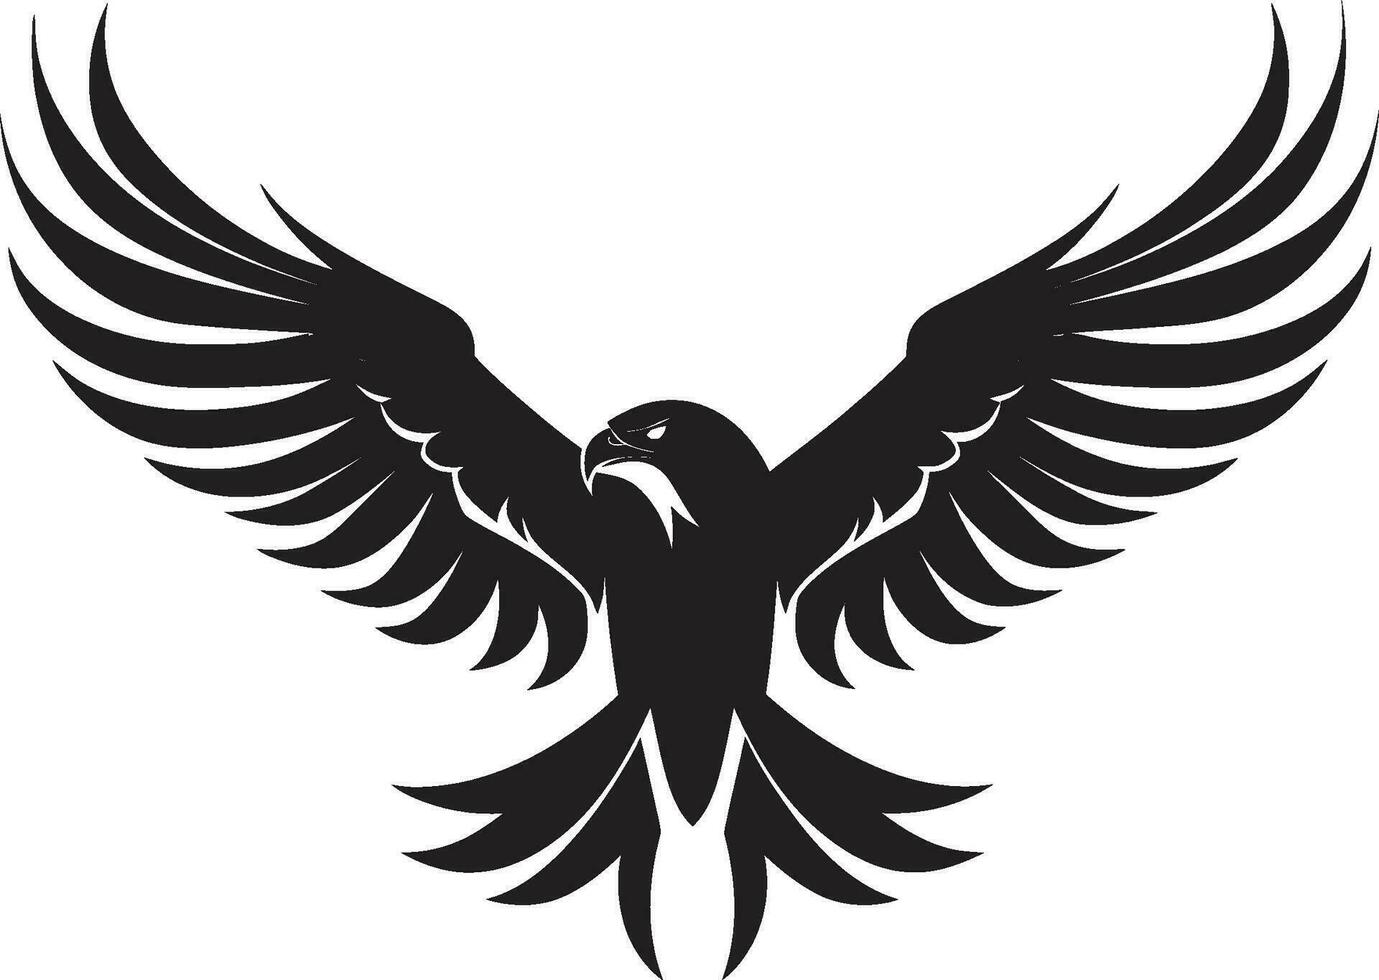 edel Flug Profil schwarz Adler Vektor heftig Raubvogel Emblem Adler Vektor Design